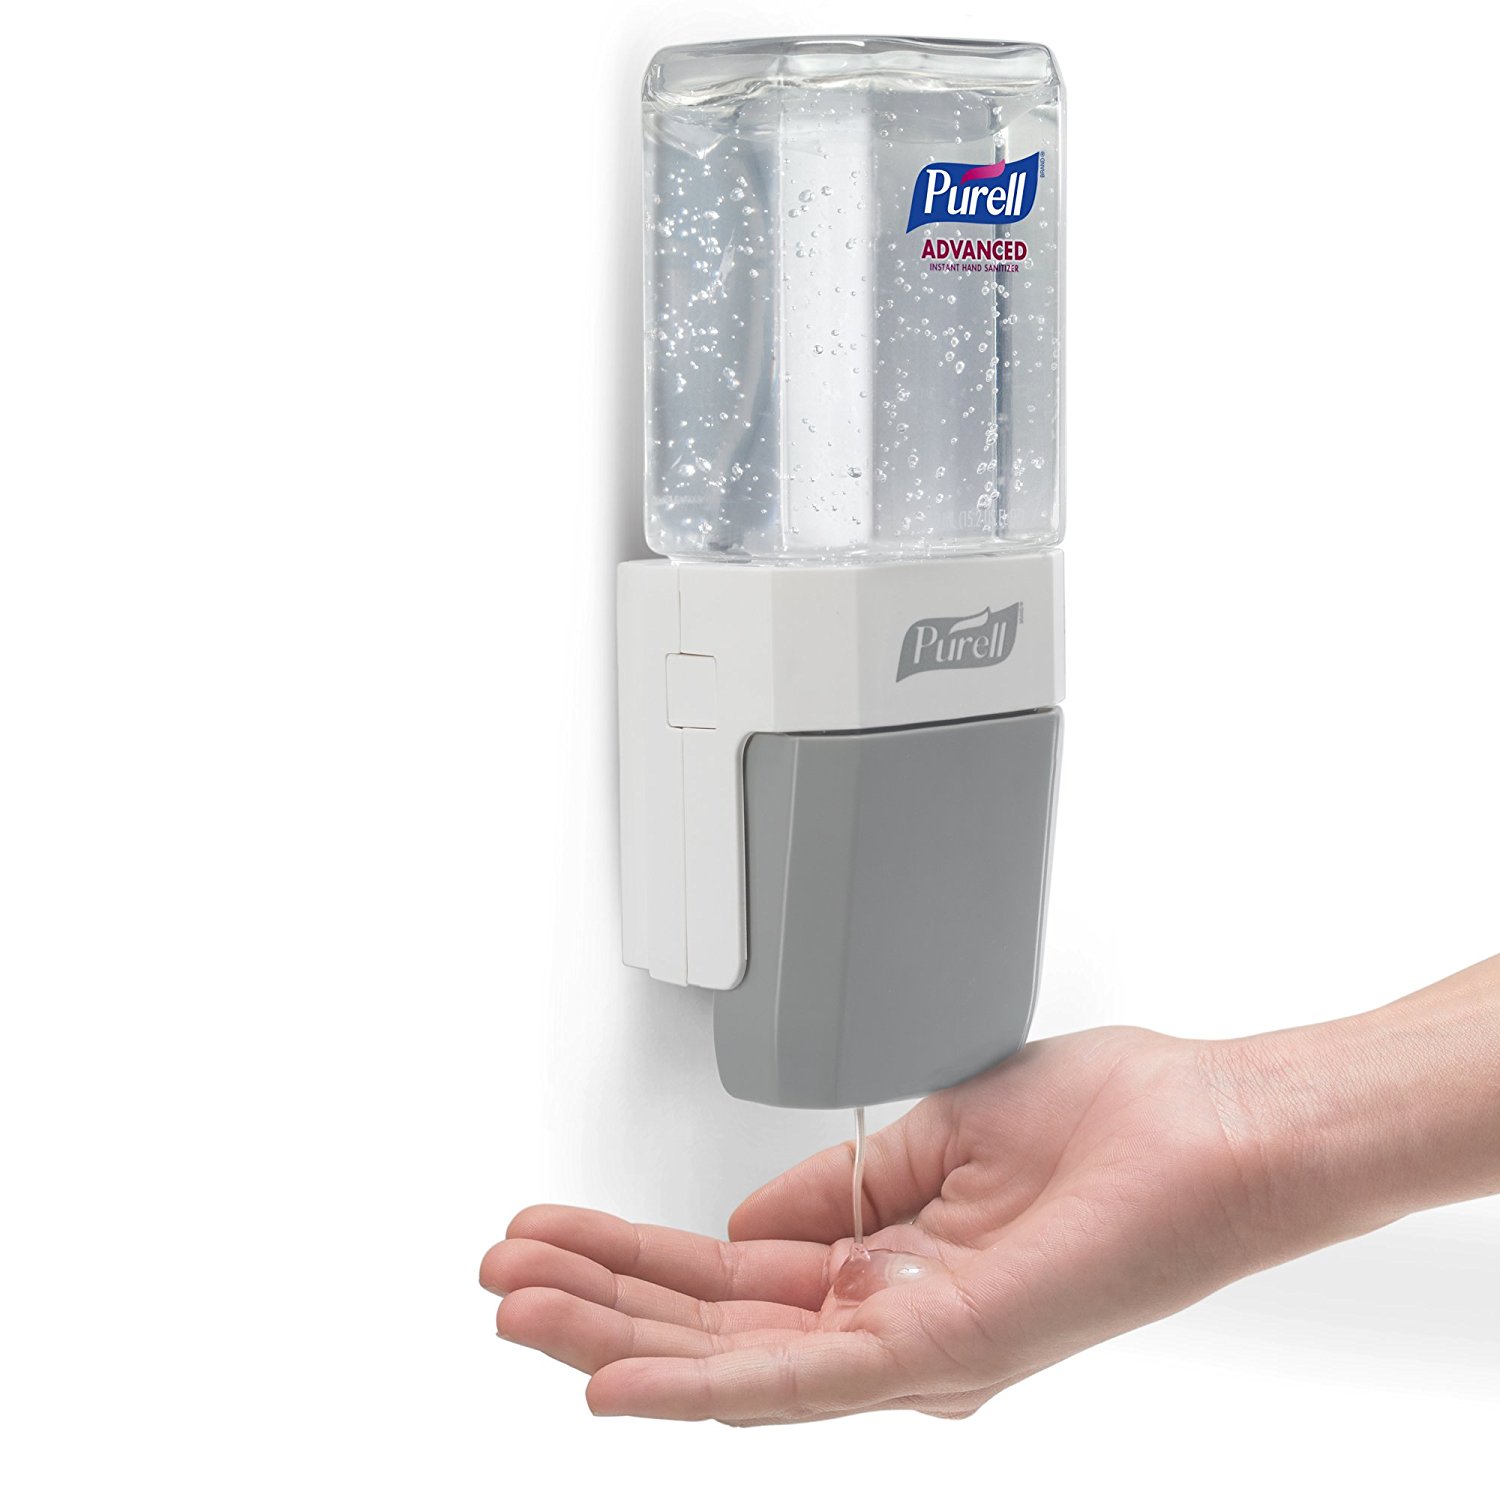 Purell Advanced Hand Santizer Dispenser Only $8.48!